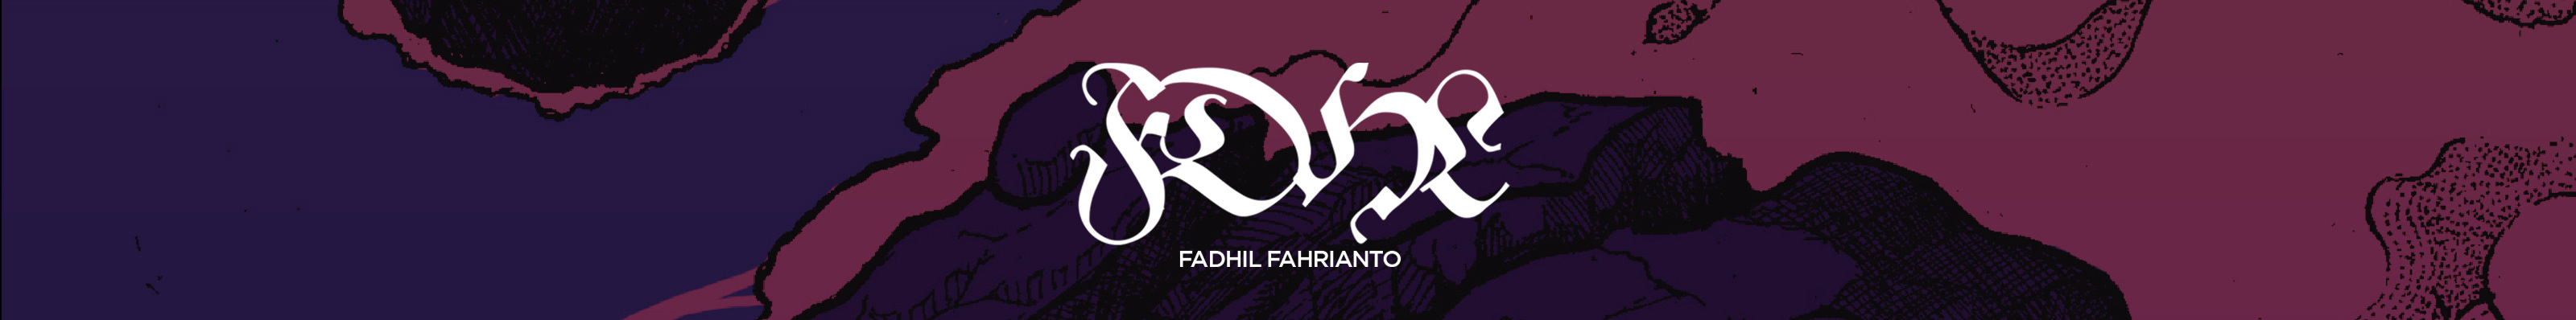 M Fadhil Fahrianto's profile banner